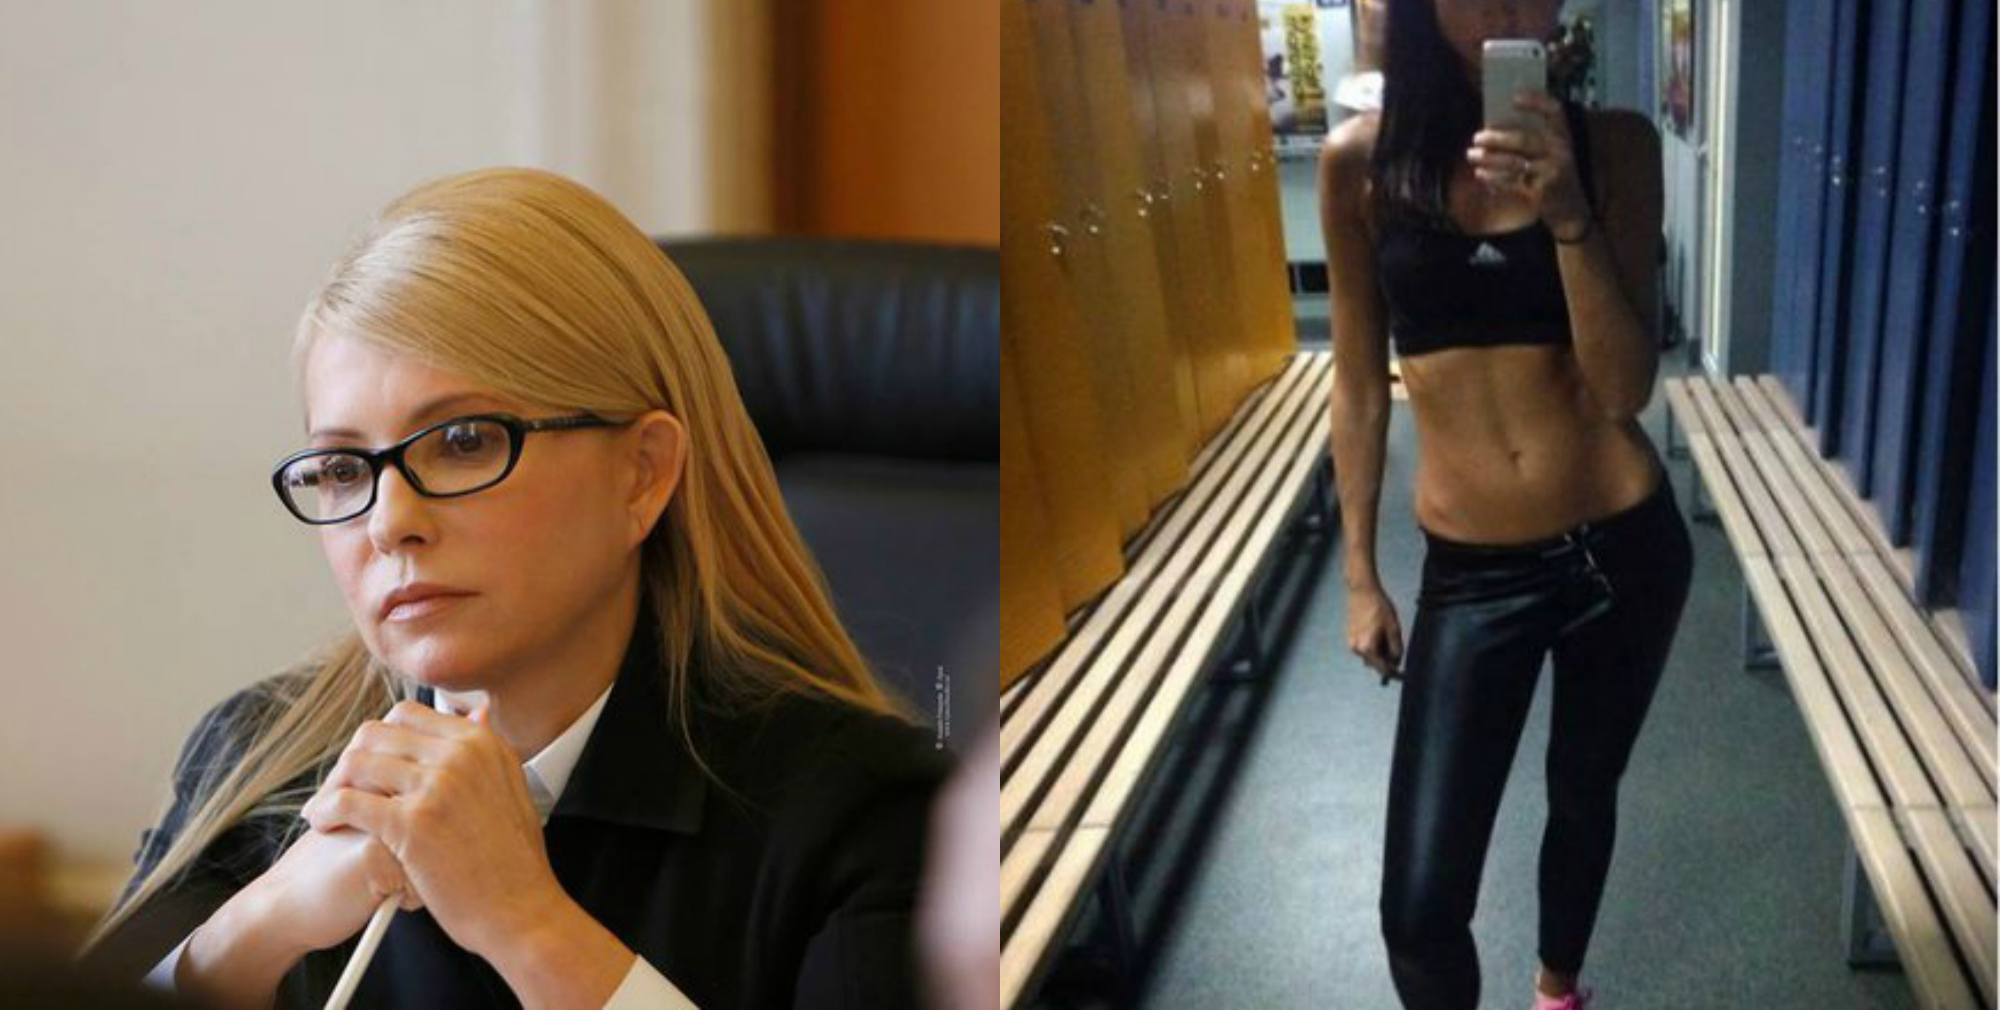 Тимошенко, депутатка-радикалка і розпустна дружина: відомі персони шокували мережу своїми фото (+18)